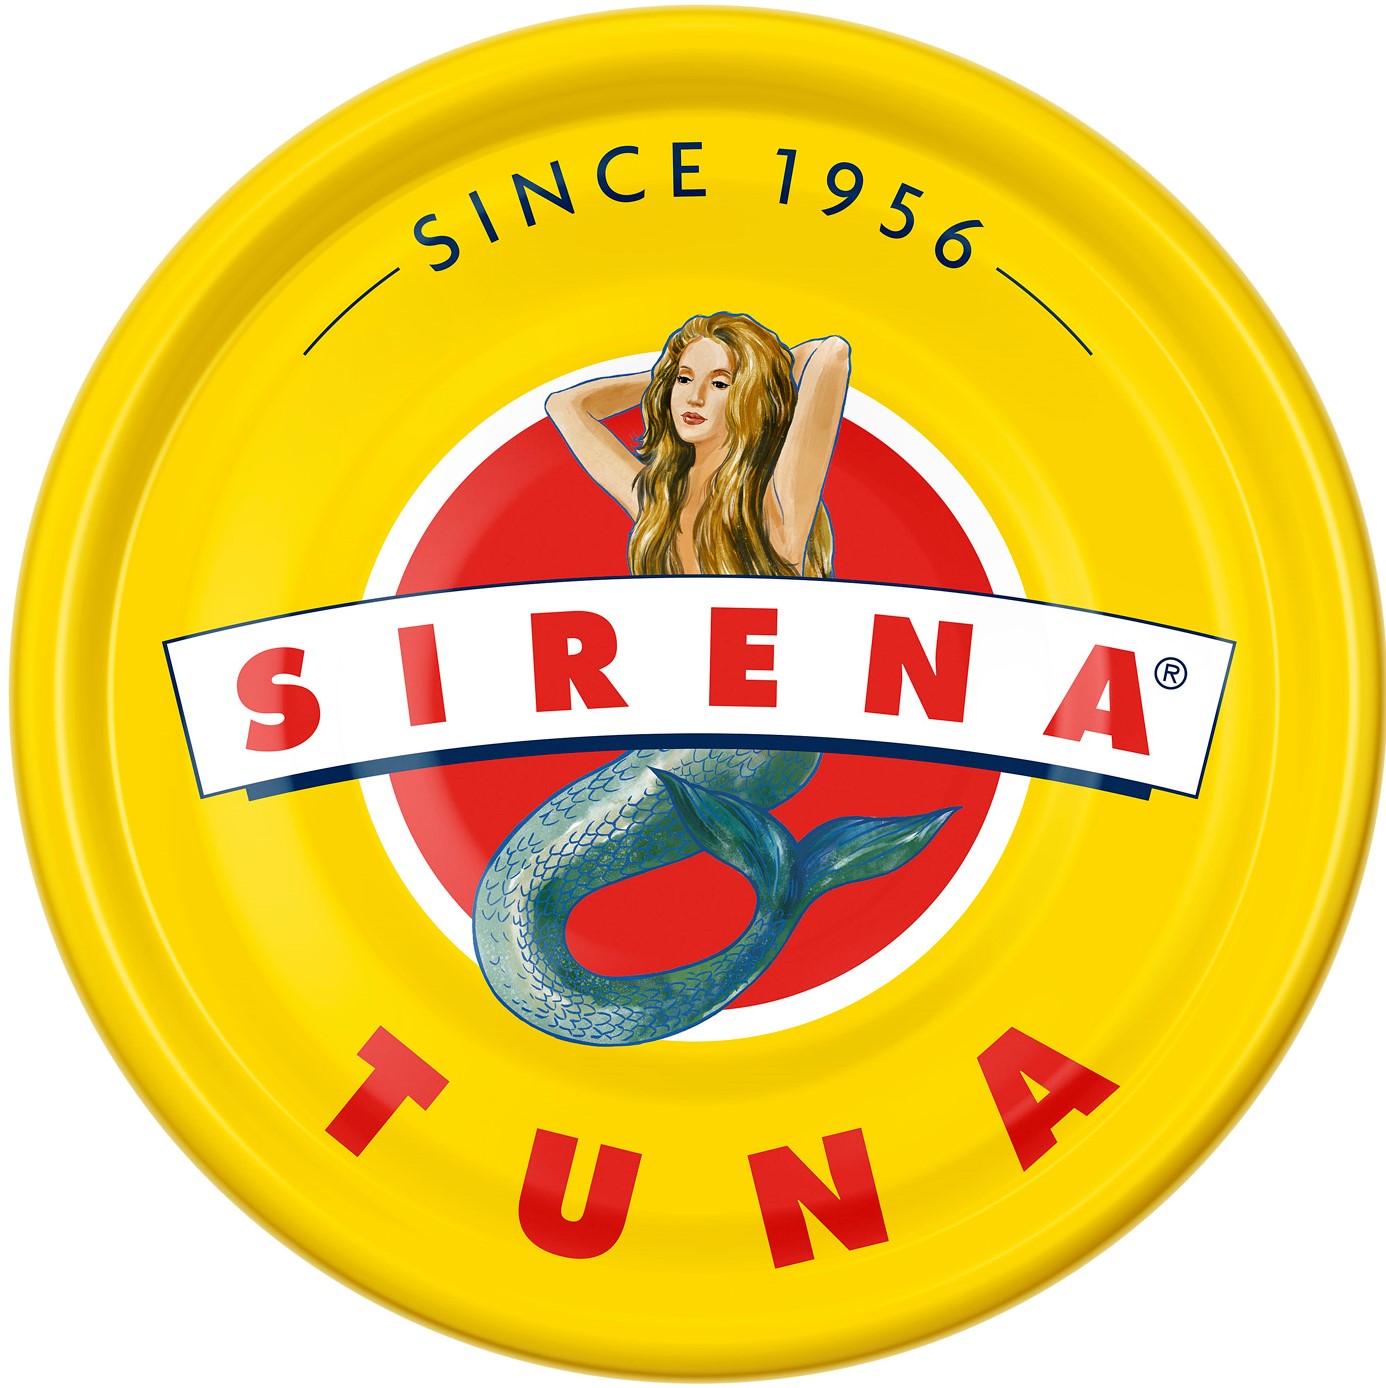 Sirena Tuna Logo